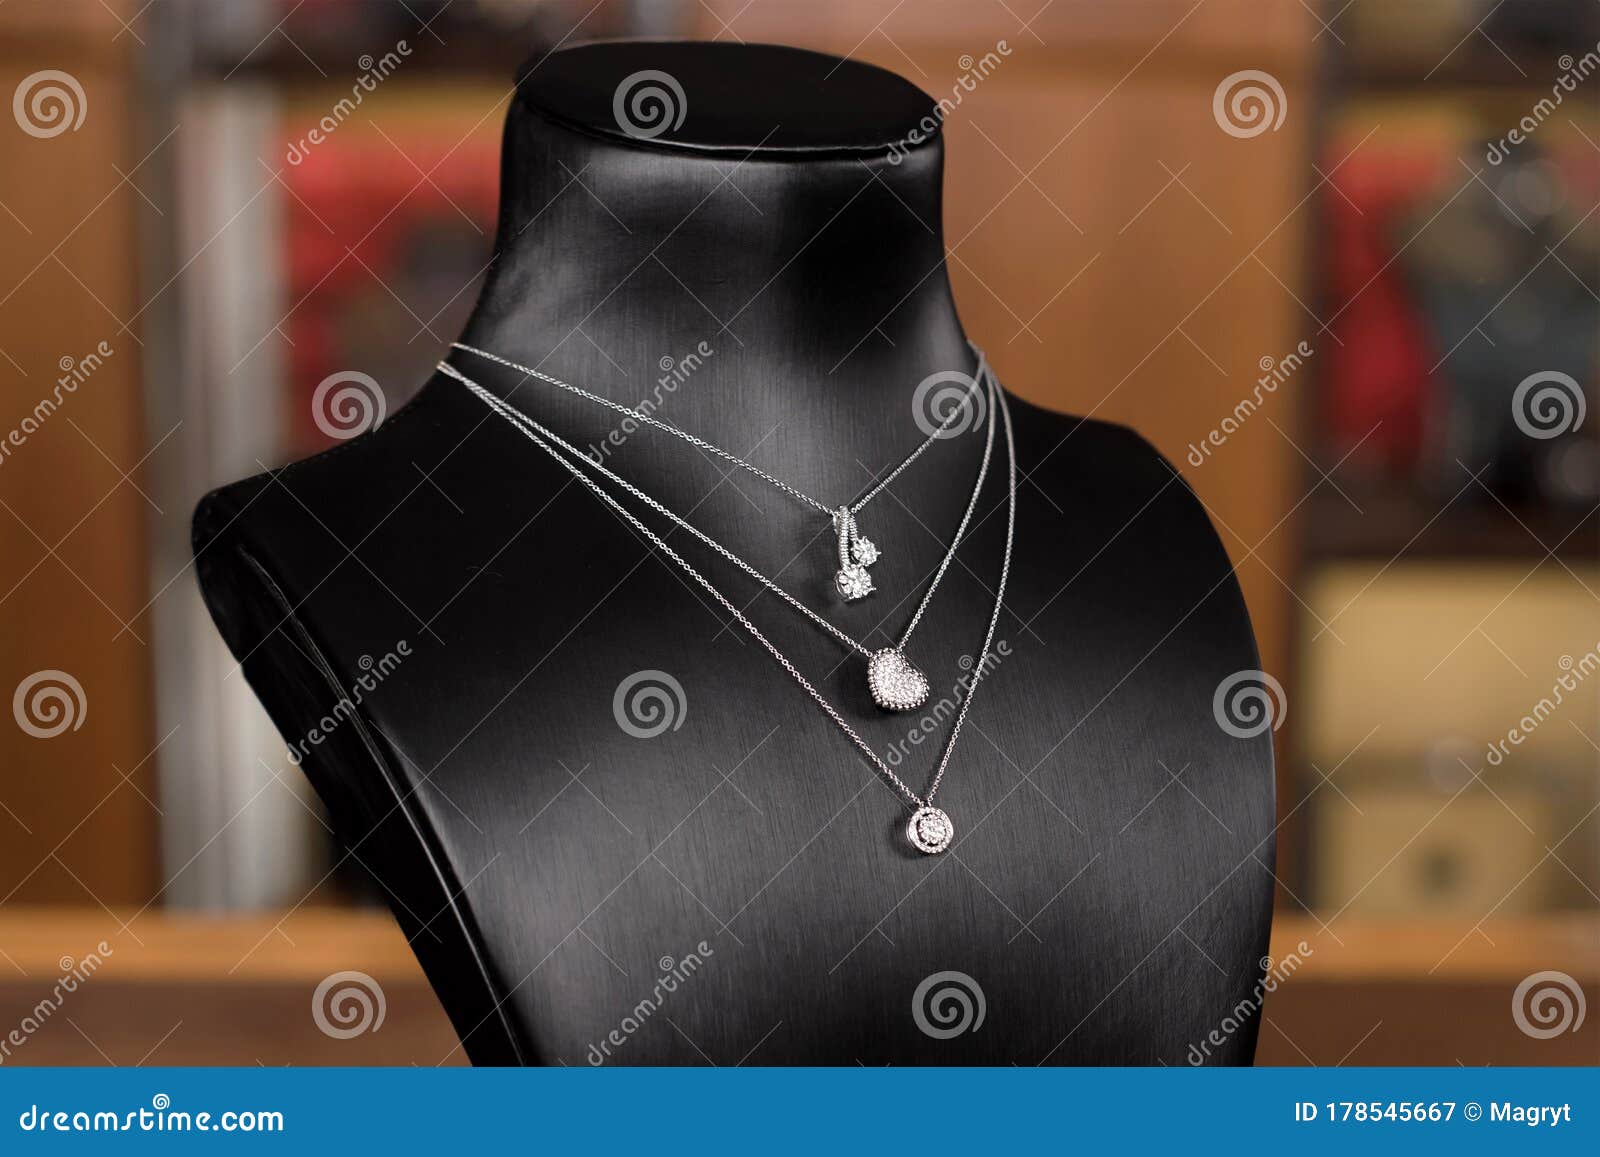 Collares De Con Diamantes Un Puesto De La Tienda De Joyas Moda. Cuello Negro Con Joyas De Lujo Imagen de archivo - Imagen de minorista, muchacha: 178545667